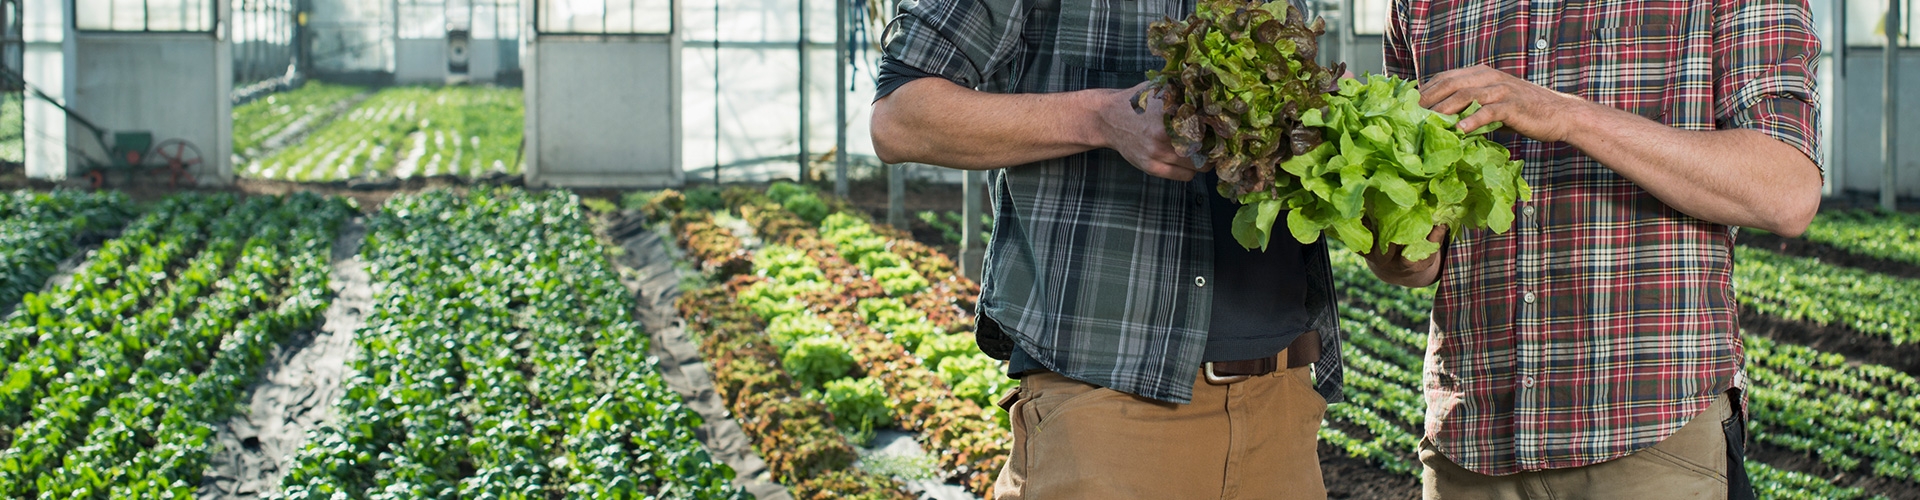 Seguro Agrario para Hortícolas - Personas en invernador, revisando la calidad de los productos de las plantas